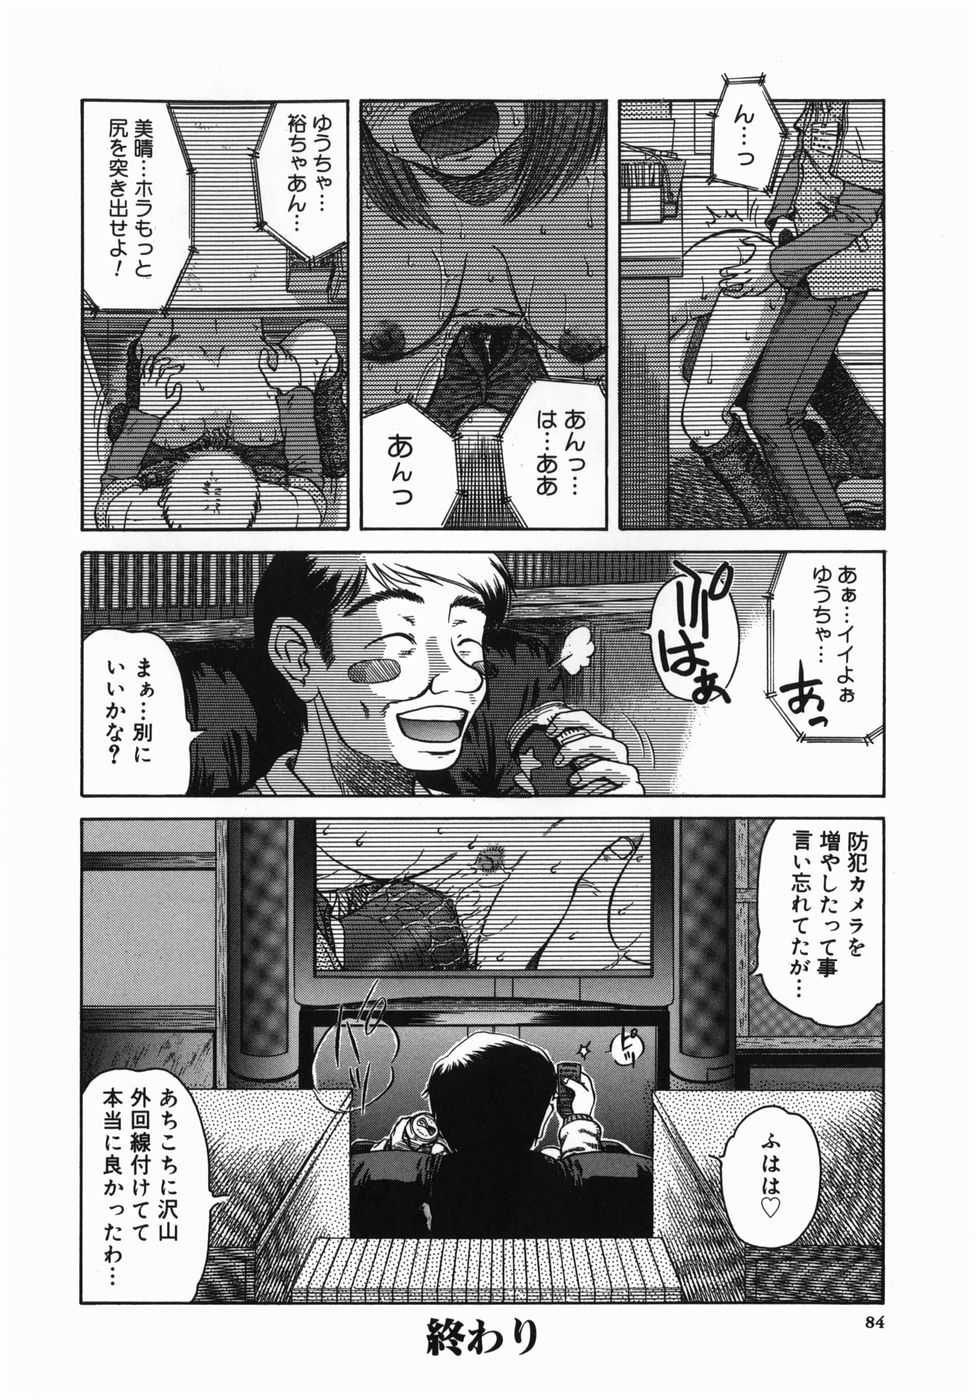 [Mishima Yuki] Shinya ni Youkoso - Welcome to midnight. [みしまゆき] 深夜にようこそ